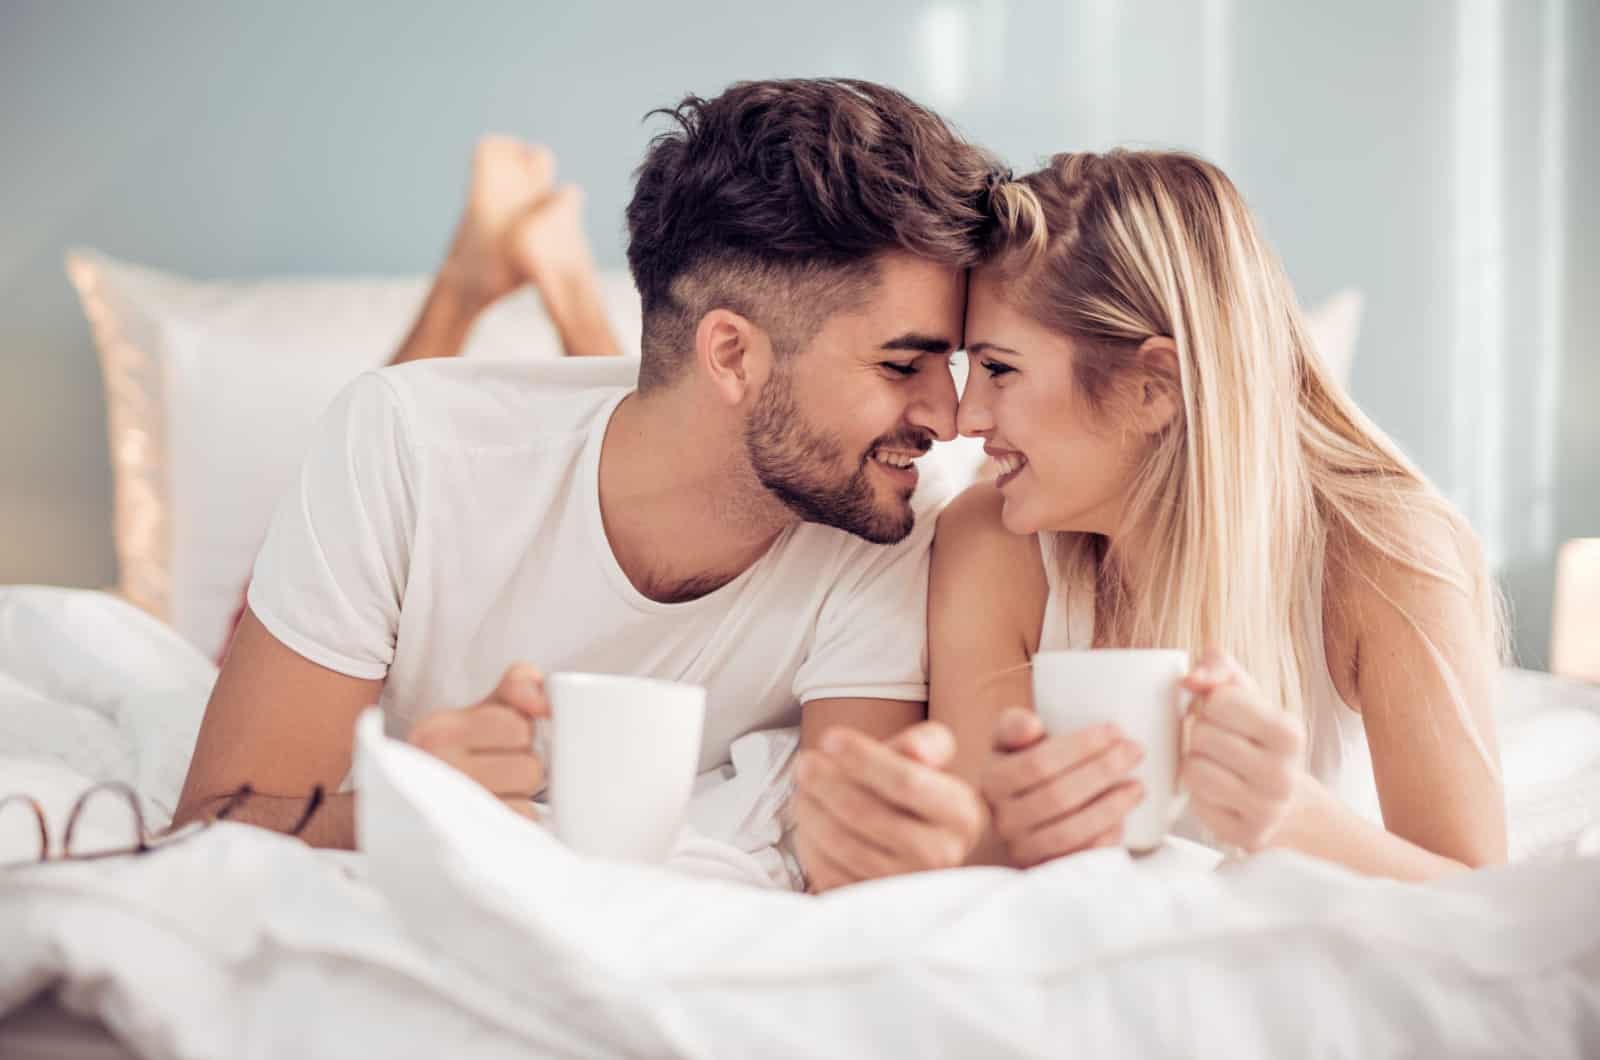 30 Morning Date Ideas To Awaken Romance